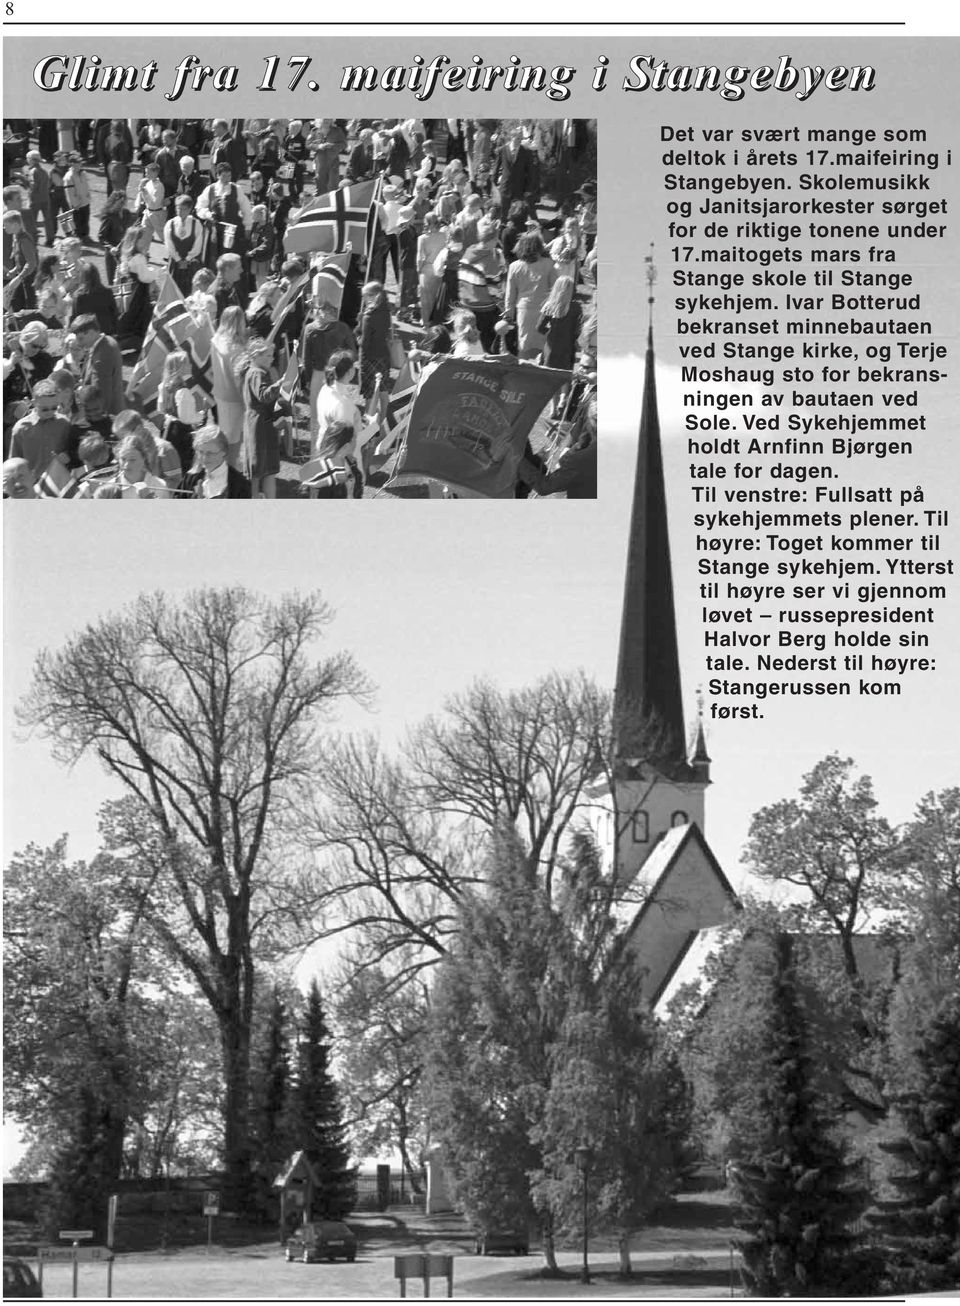 Ivar Botterud bekranset minnebautaen ved Stange kirke, og Terje Moshaug sto for bekransningen av bautaen ved Sole.